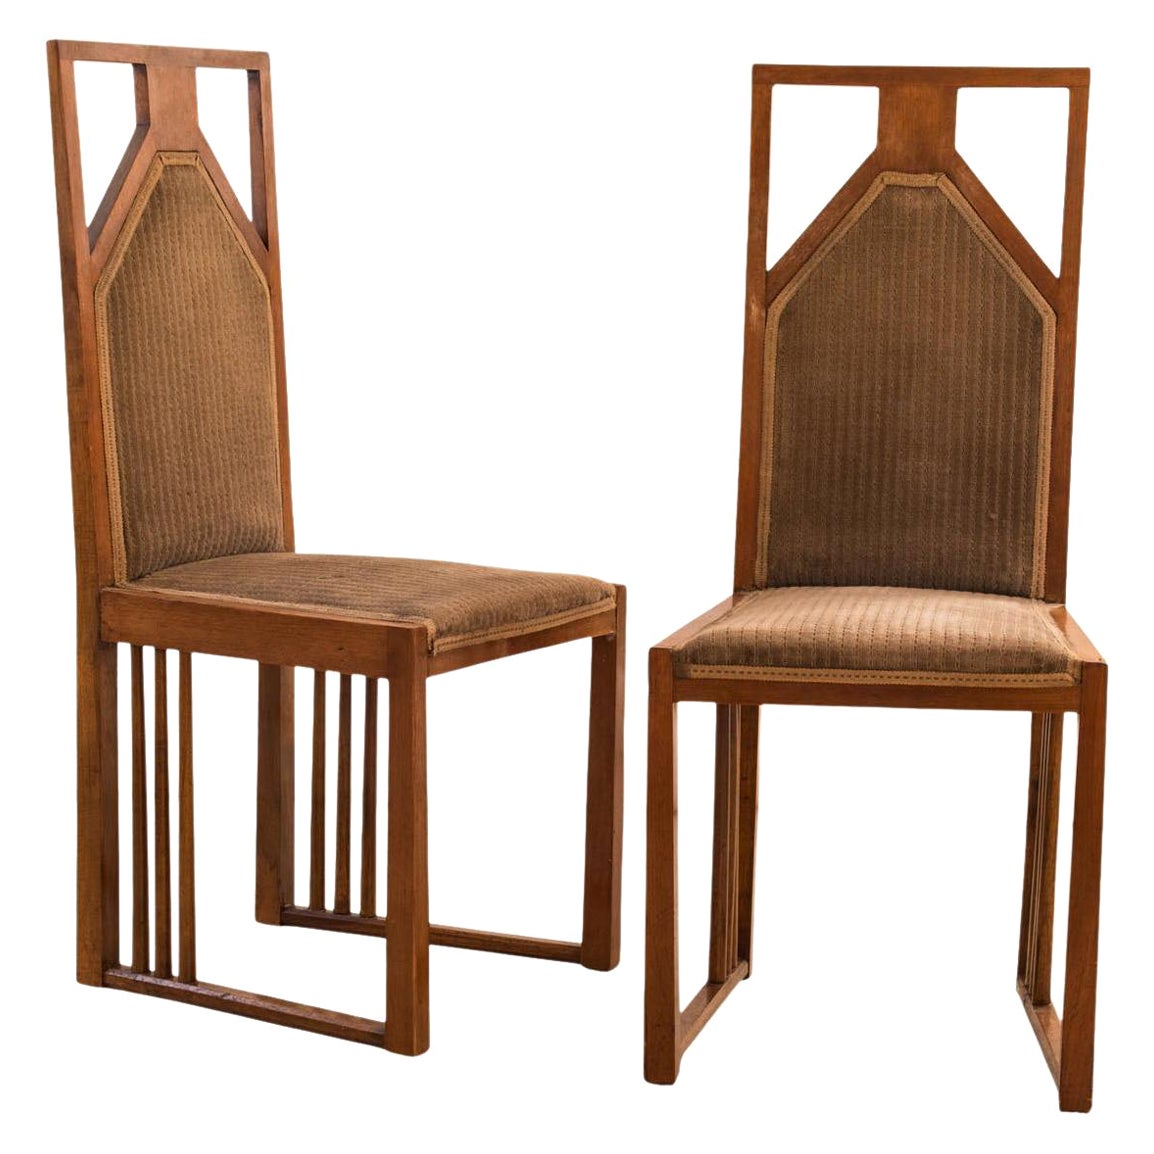 Josef Hoffmann Paire de chaises extraordinaires 1905-10 Jugendstil Art Nouveau